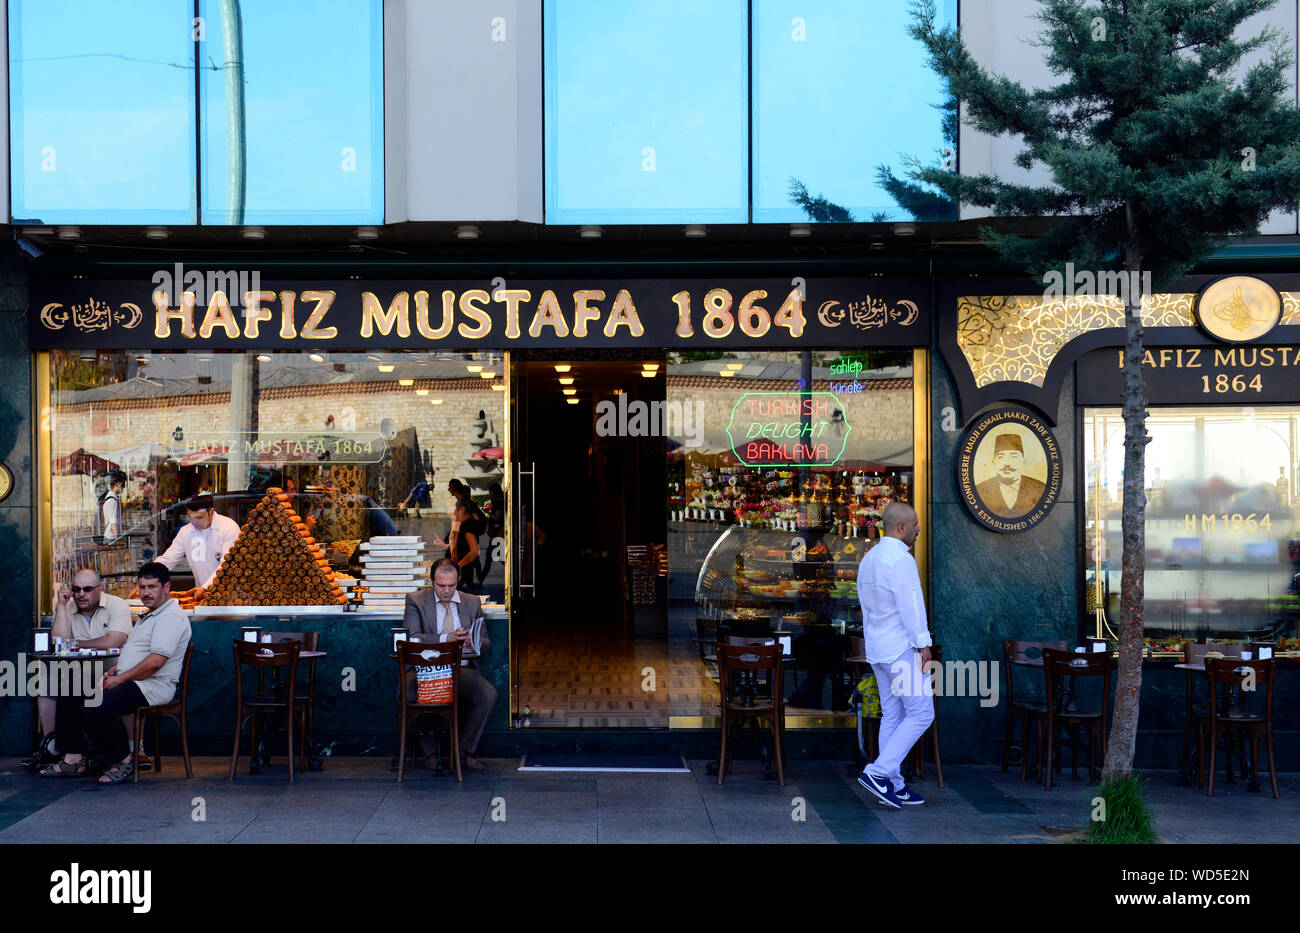 Traditionelle türkische / arabische Süßigkeiten verkauft an der berühmten Konditorei Hafiz Mustafa 1864 von Taksim Quadrat in Istanbul. Stockfoto